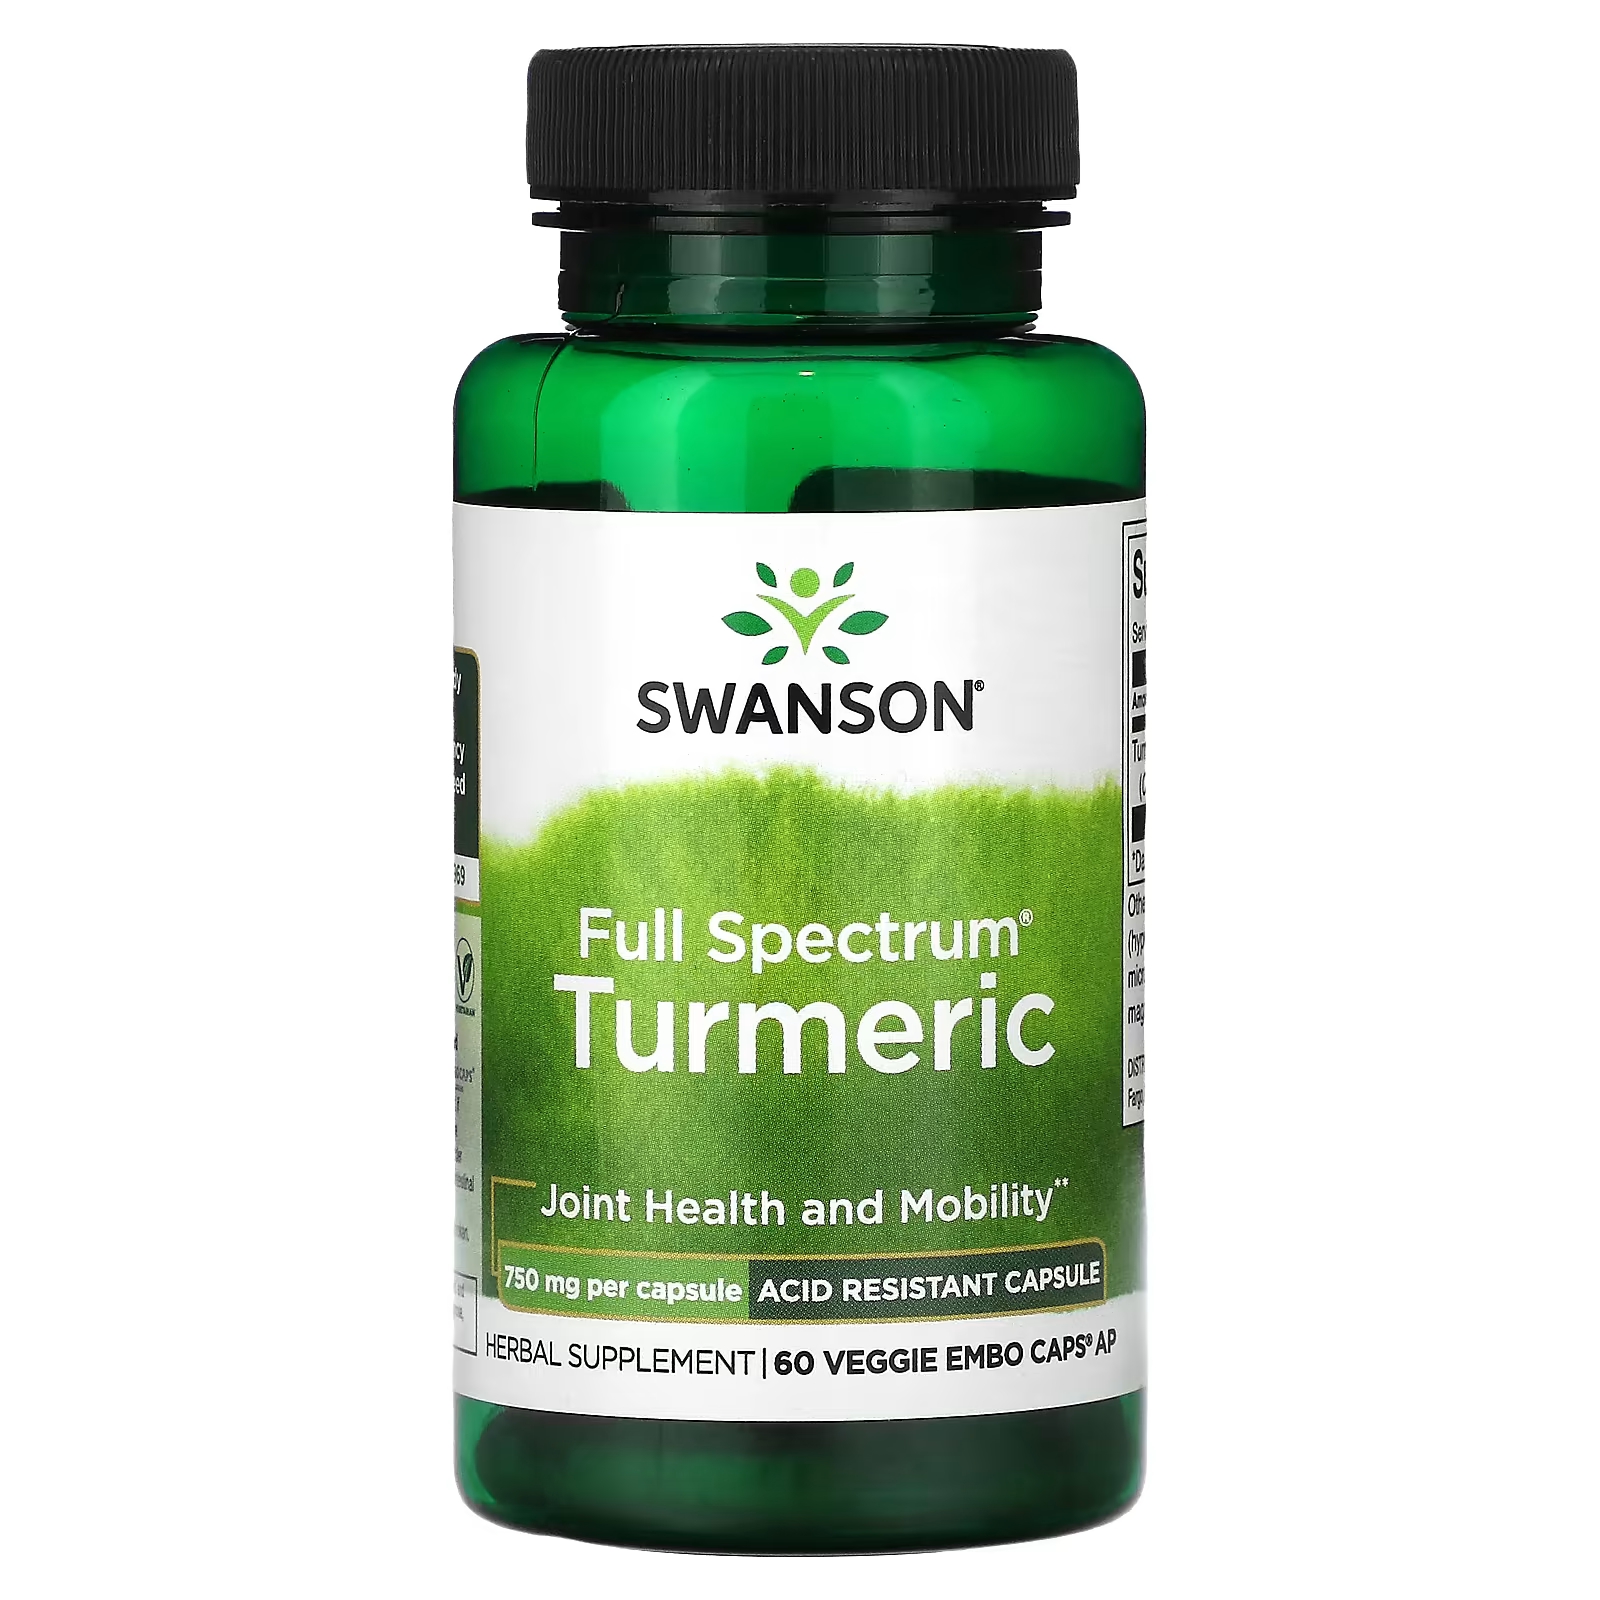 Пищевая добавка Swanson Full Spectrum Turmeric 750 мг